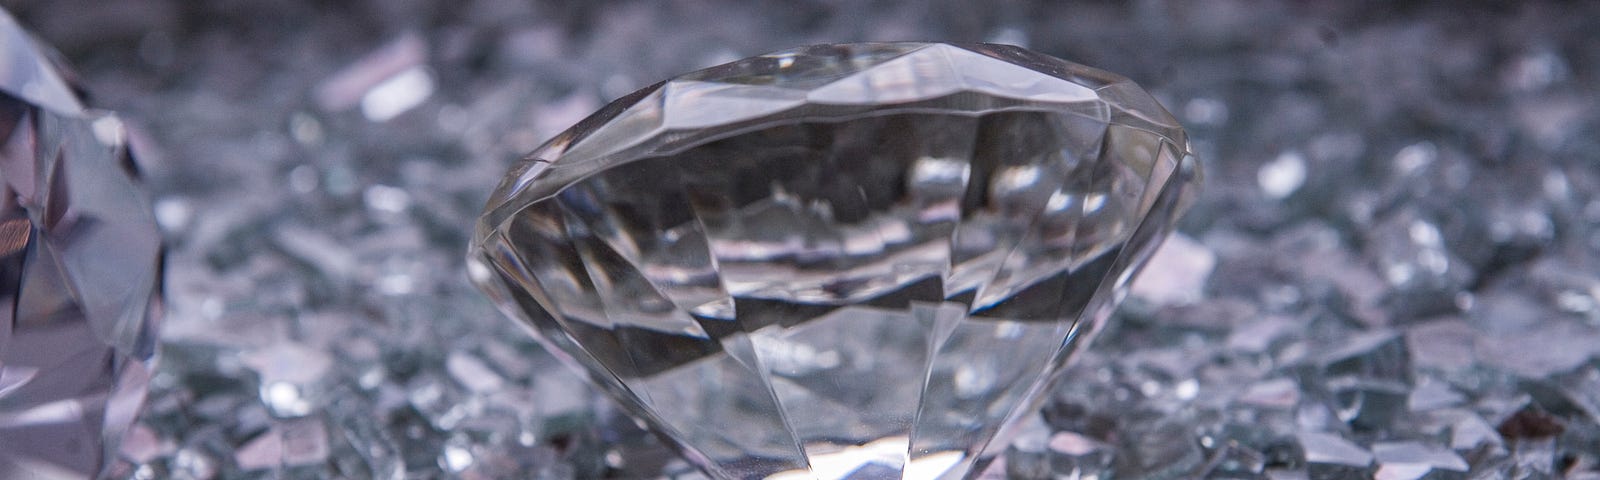 Diamond among shards of glass